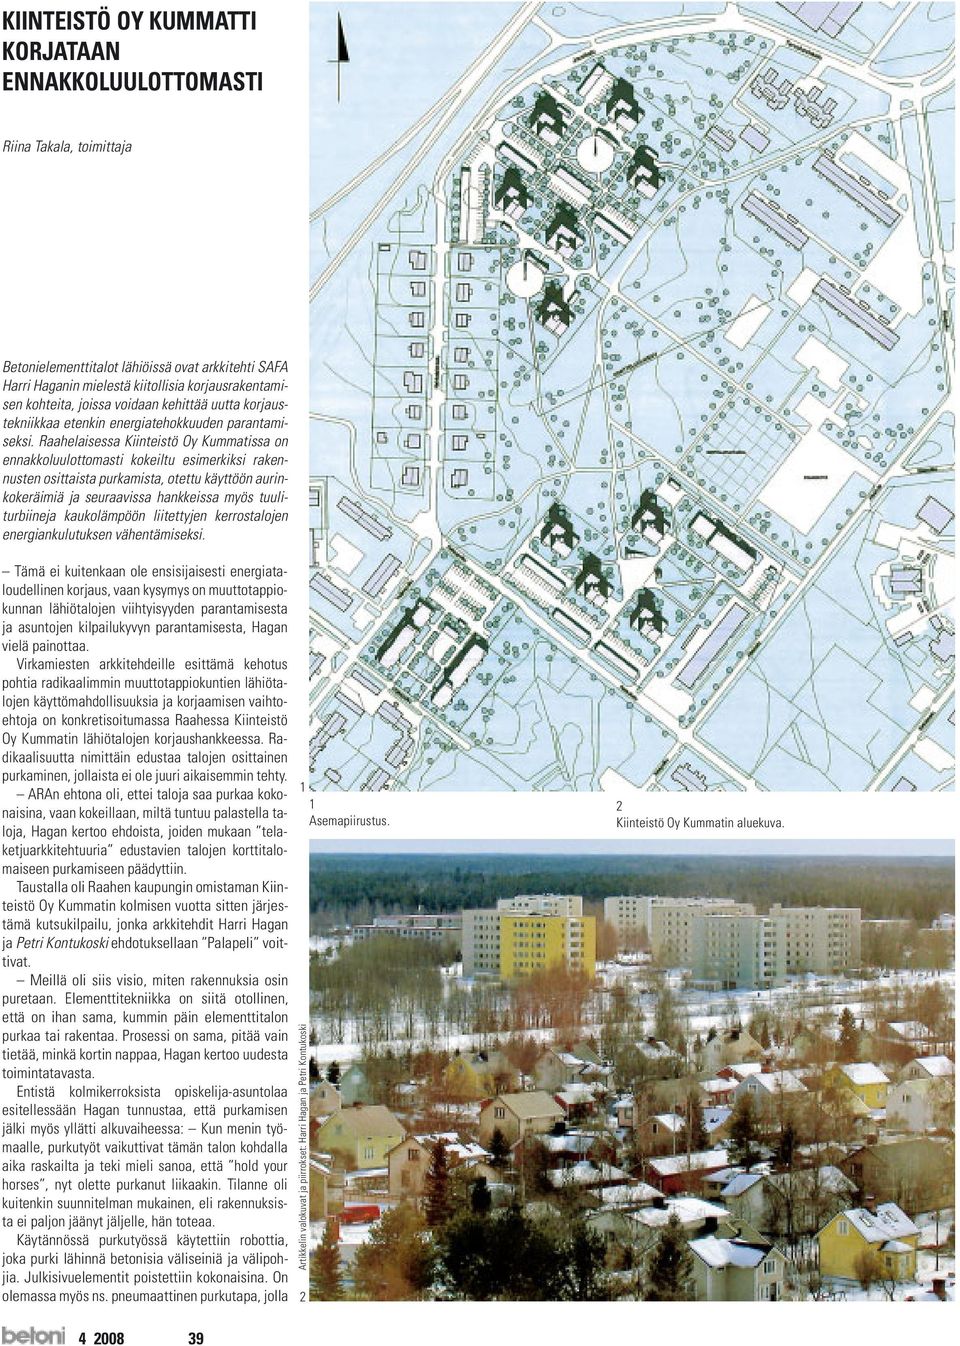 Raahelaisessa Kiinteistö Oy Kummatissa on ennakkoluulottomasti kokeiltu esimerkiksi rakennusten osittaista purkamista, otettu käyttöön aurinkokeräimiä ja seuraavissa hankkeissa myös tuuliturbiineja